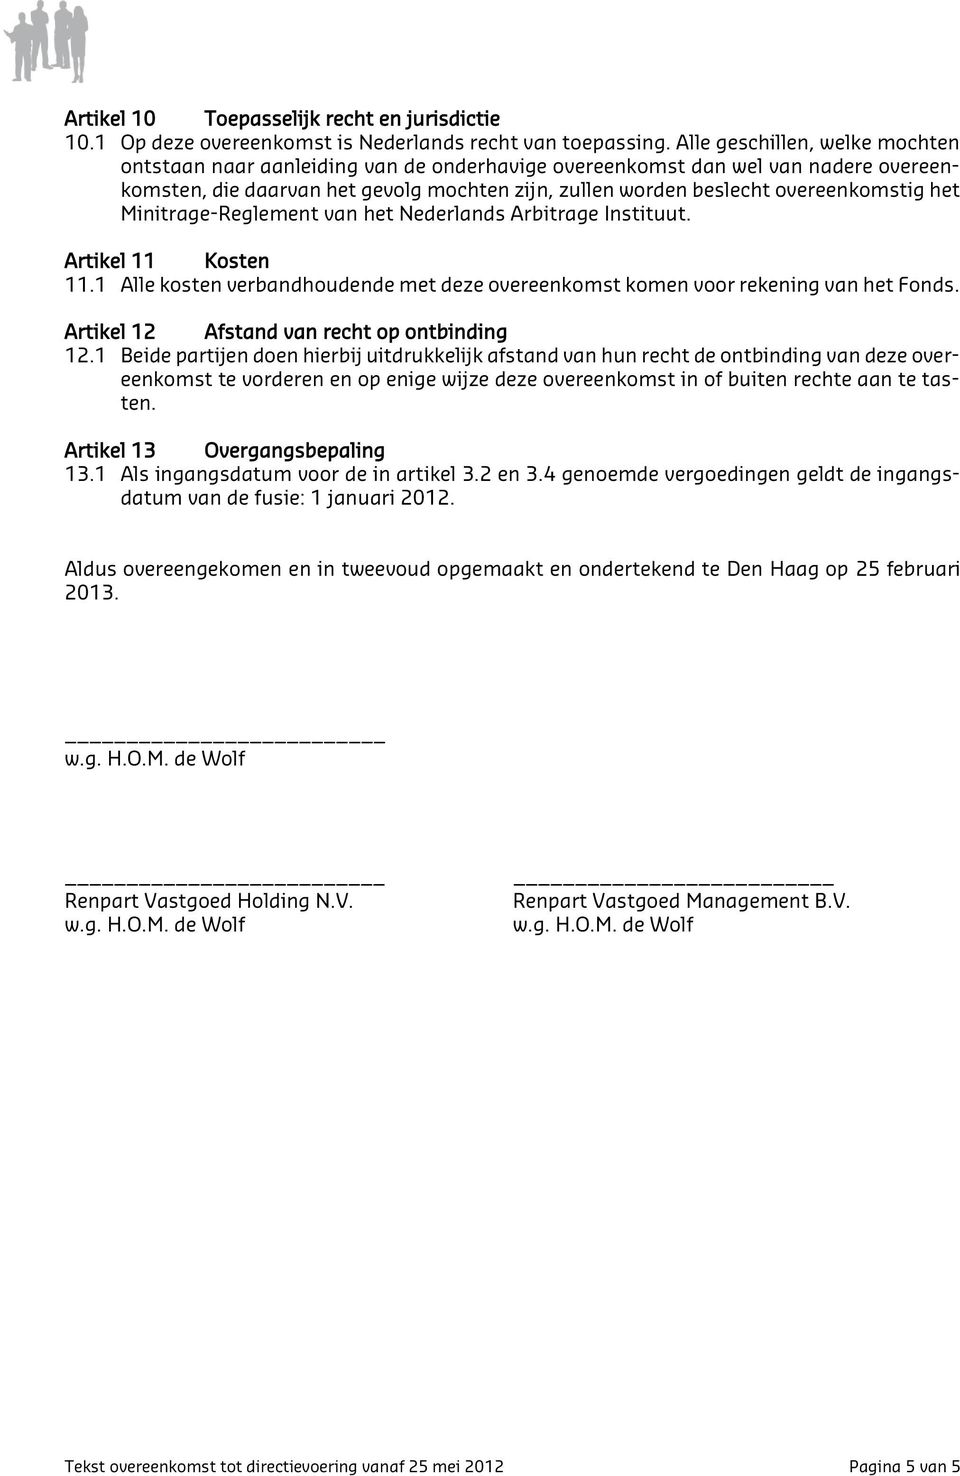 het Minitrage-Reglement van het Nederlands Arbitrage Instituut. Artikel 11 Kosten 11.1 Alle kosten verbandhoudende met deze overeenkomst komen voor rekening van het Fonds.